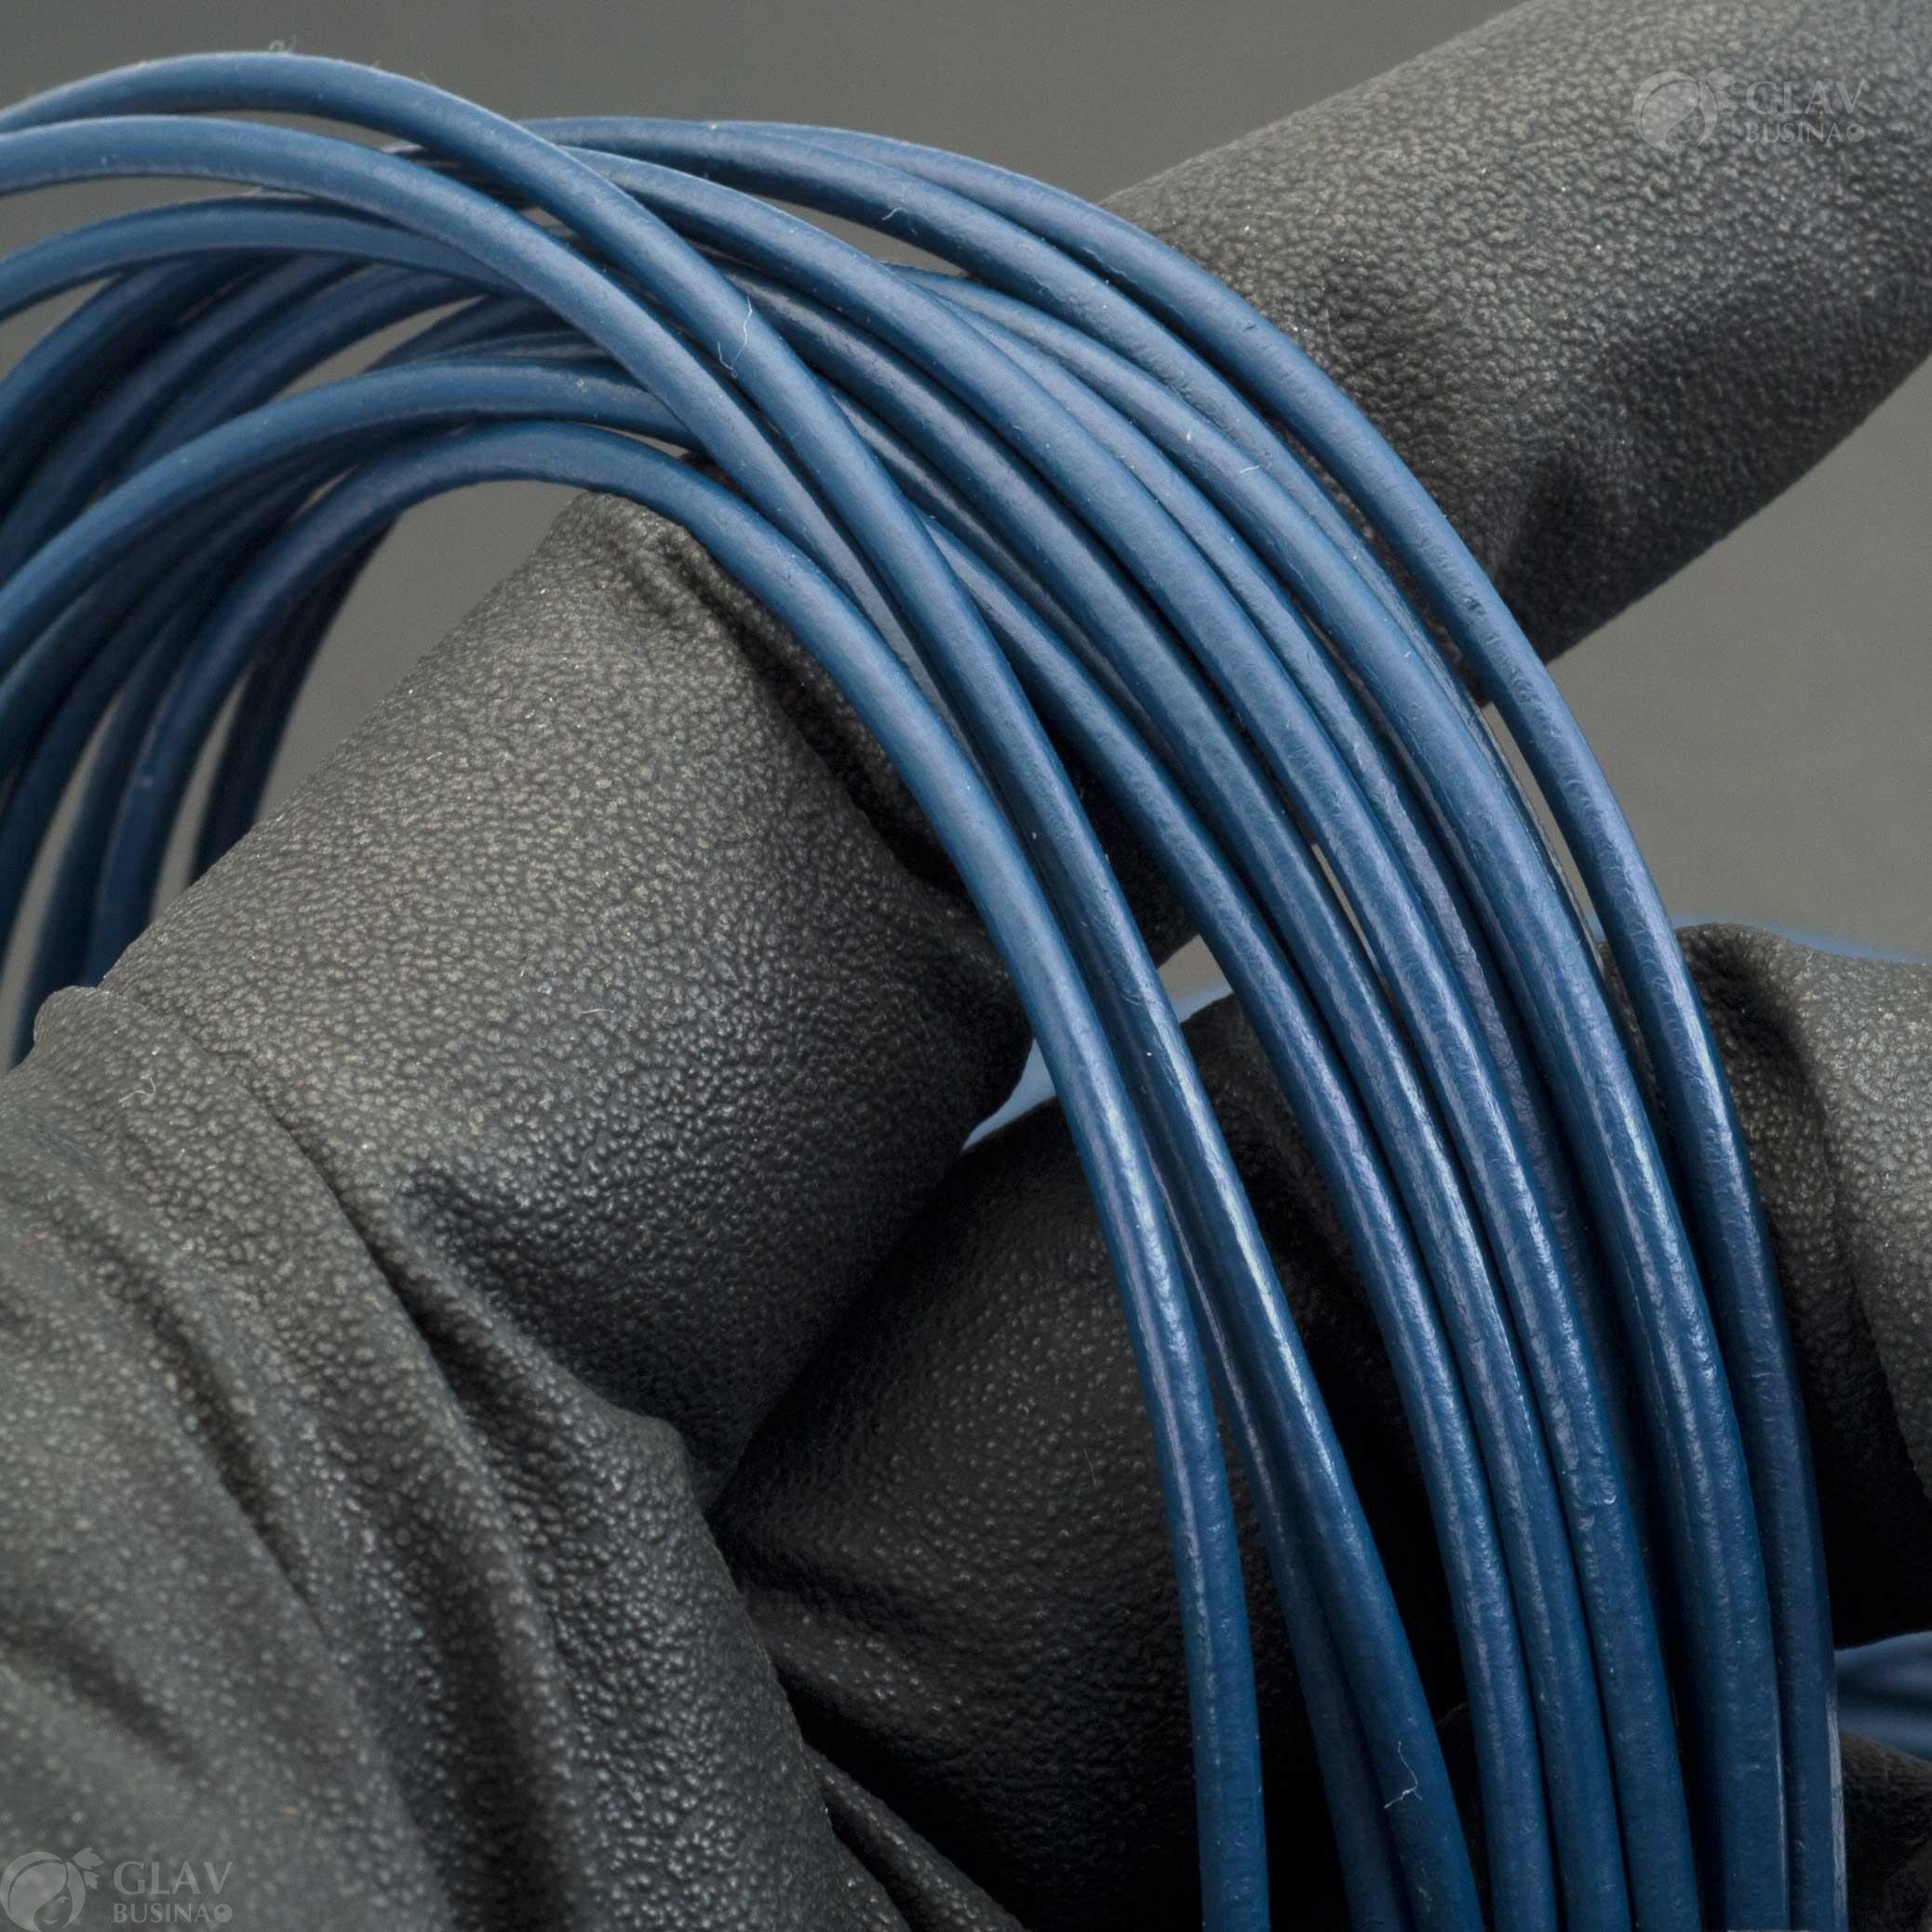 Глянцевый круглый шнур из натуральной кожи темно-синего цвета, толщиной 2мм, продается метражом - идеален для создания кулонов и браслетов.